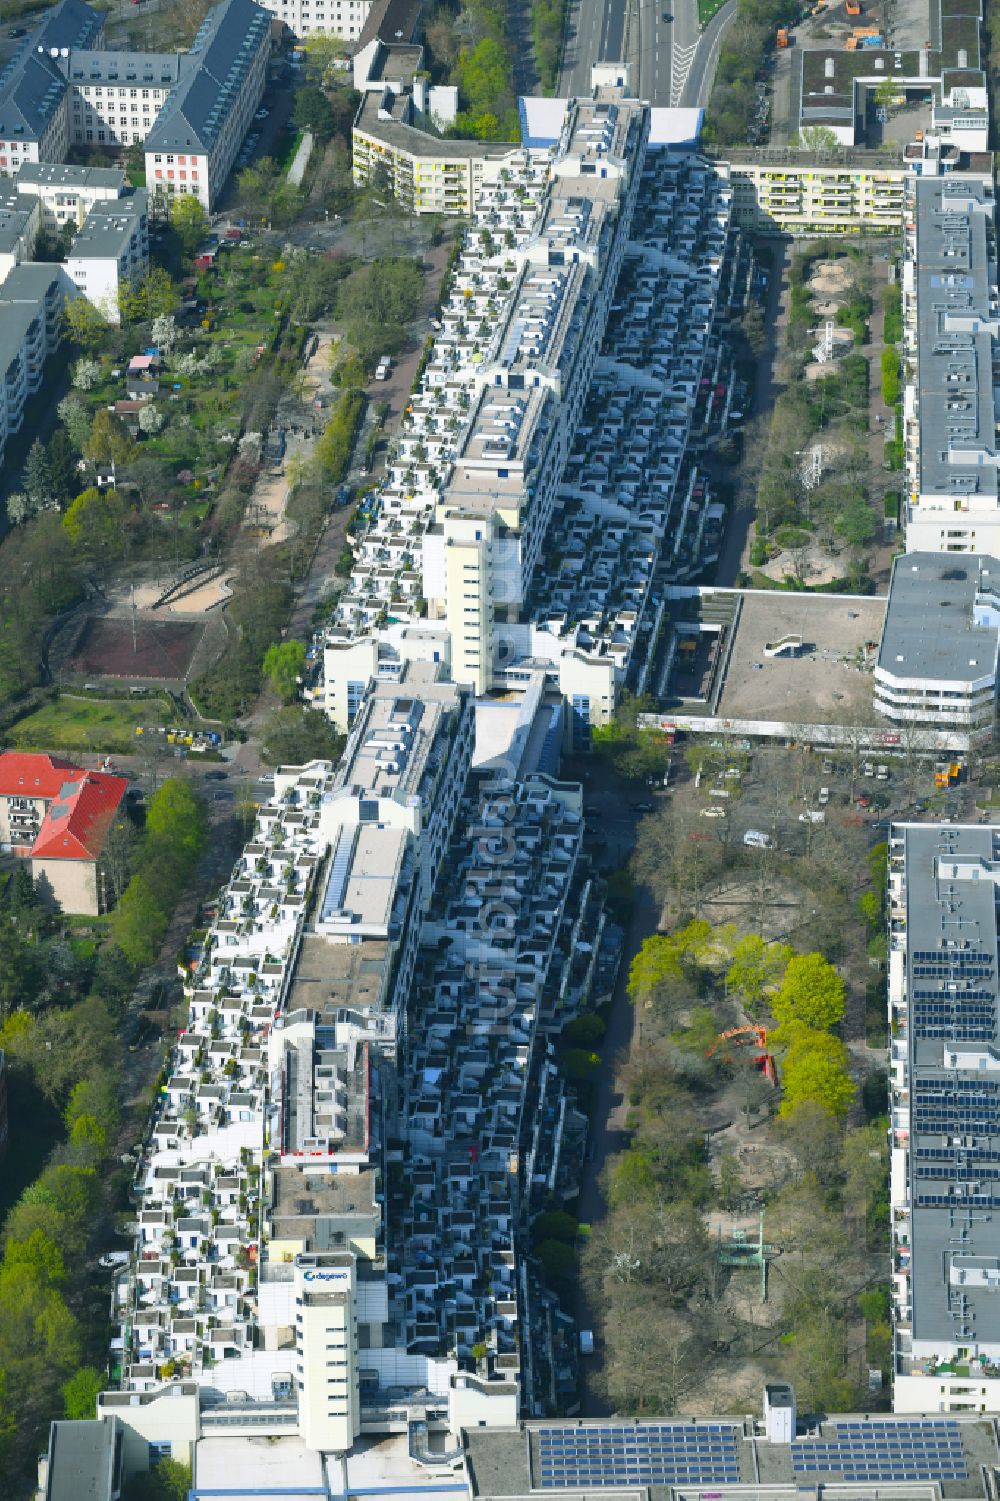 Luftbild Berlin - Dachgarten- Landschaft im Wohngebiet einer Mehrfamilienhaussiedlung in Berlin